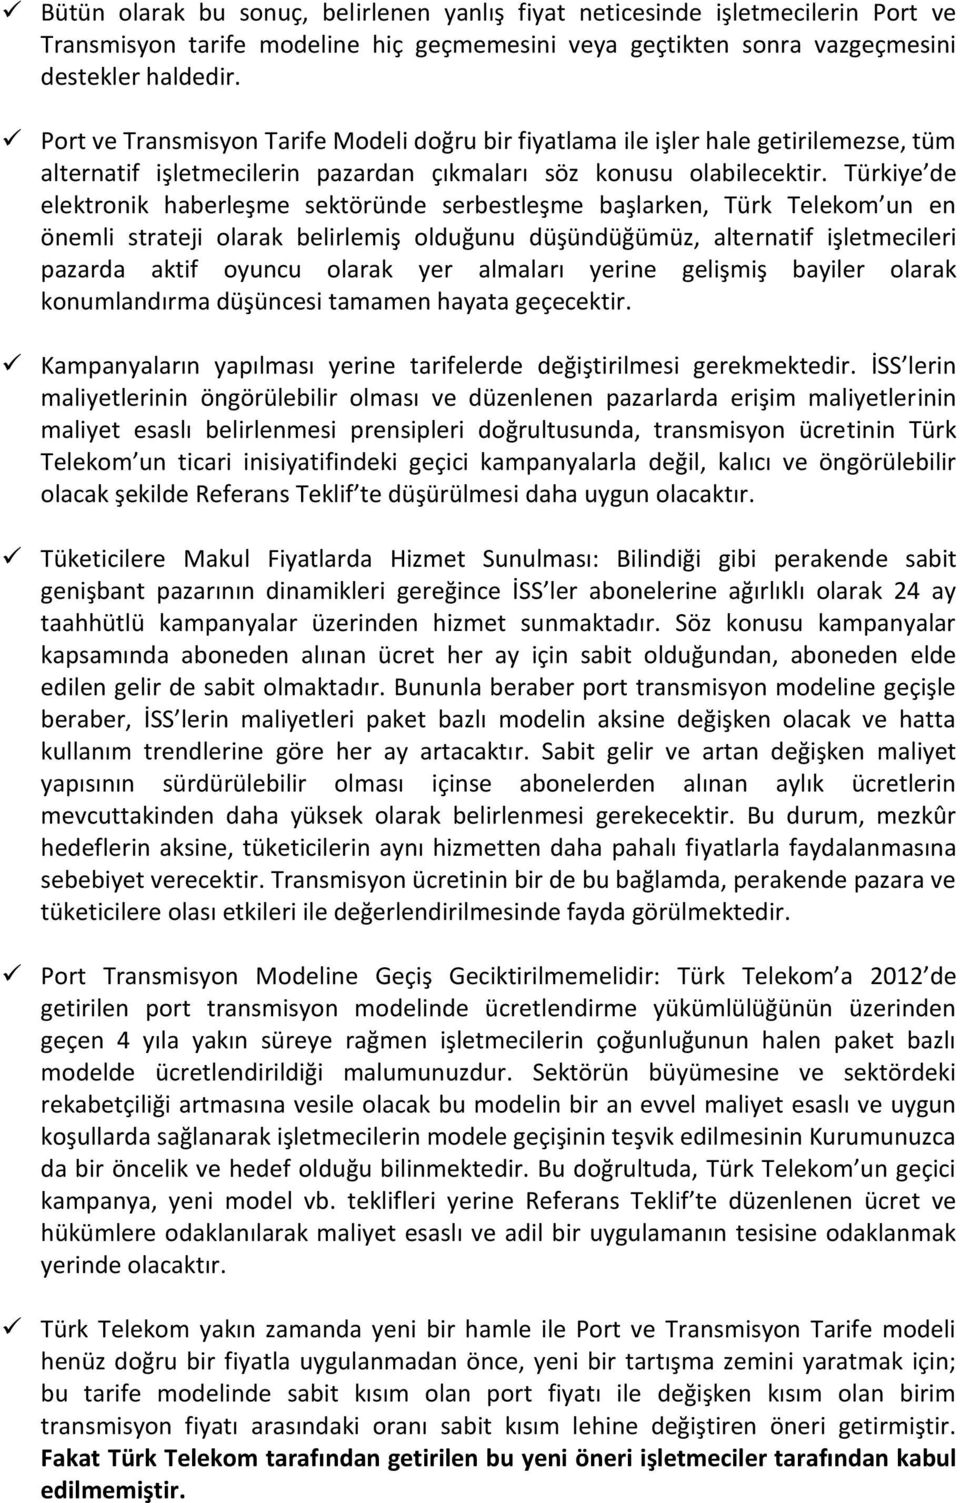 Türkiye de elektronik haberleşme sektöründe serbestleşme başlarken, Türk Telekom un en önemli strateji olarak belirlemiş olduğunu düşündüğümüz, alternatif işletmecileri pazarda aktif oyuncu olarak